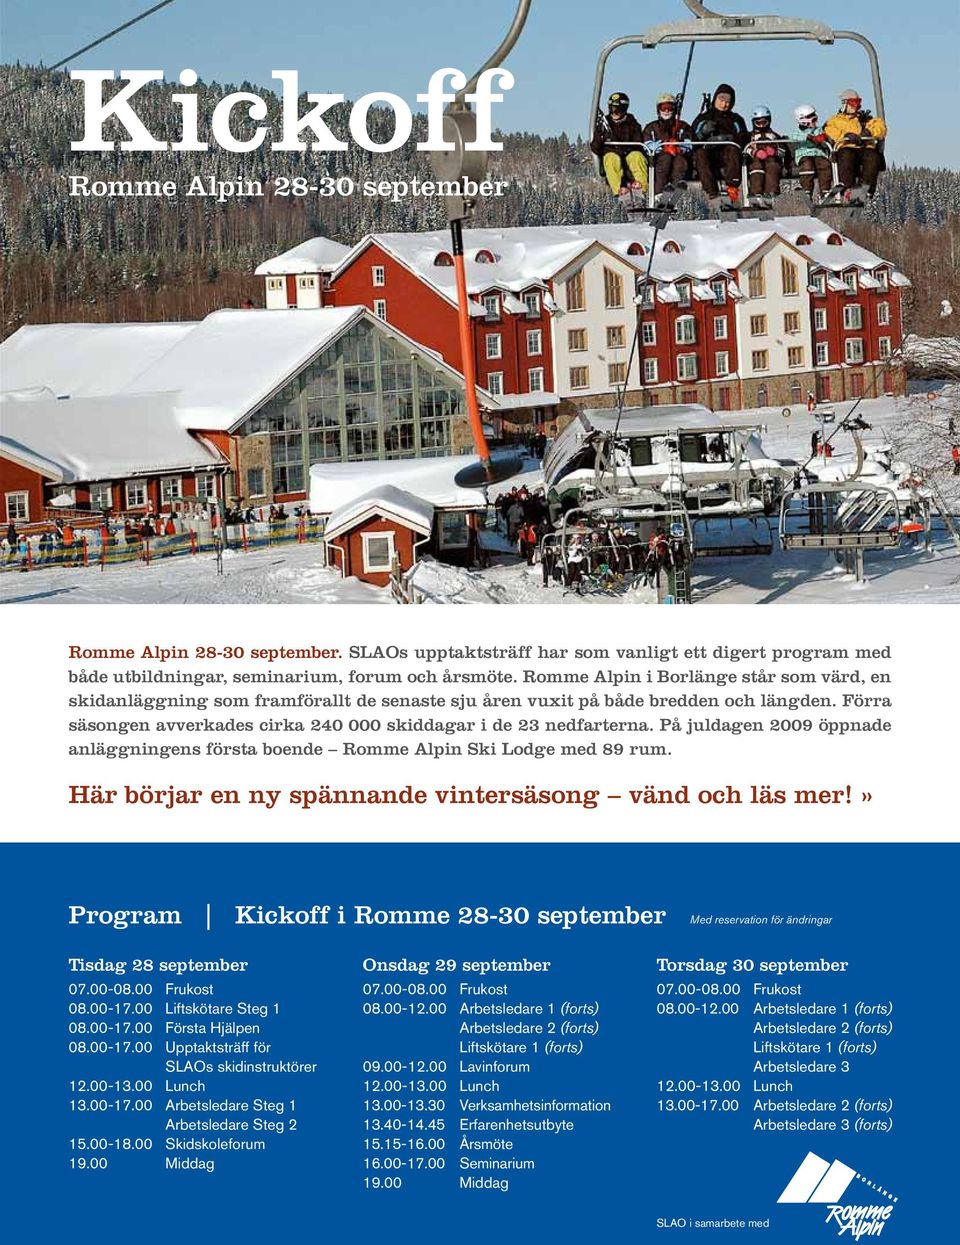 På juldagen 2009 öppnade anläggningens första boende Romme Alpin Ski Lodge med 89 rum. Här börjar en ny spännande vintersäsong vänd och läs mer!